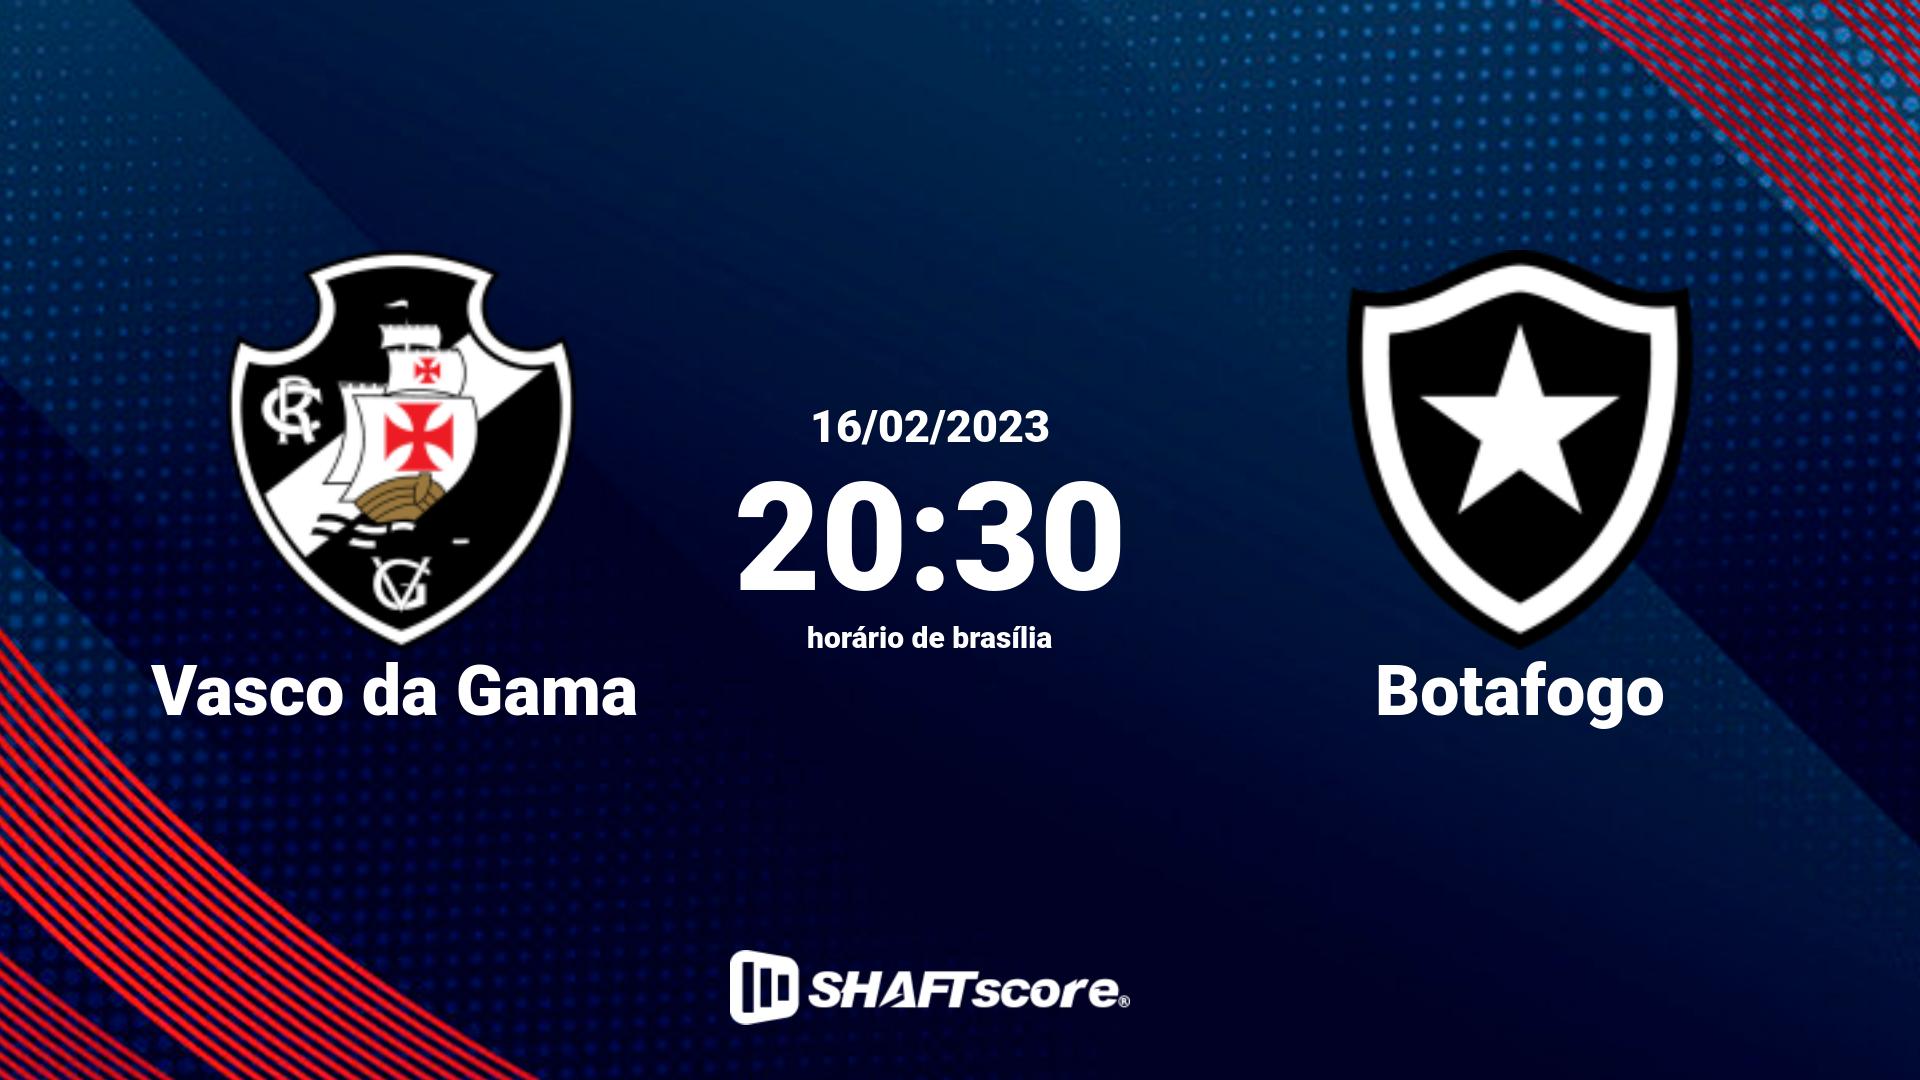 Estatísticas do jogo Vasco da Gama vs Botafogo 16.02 20:30